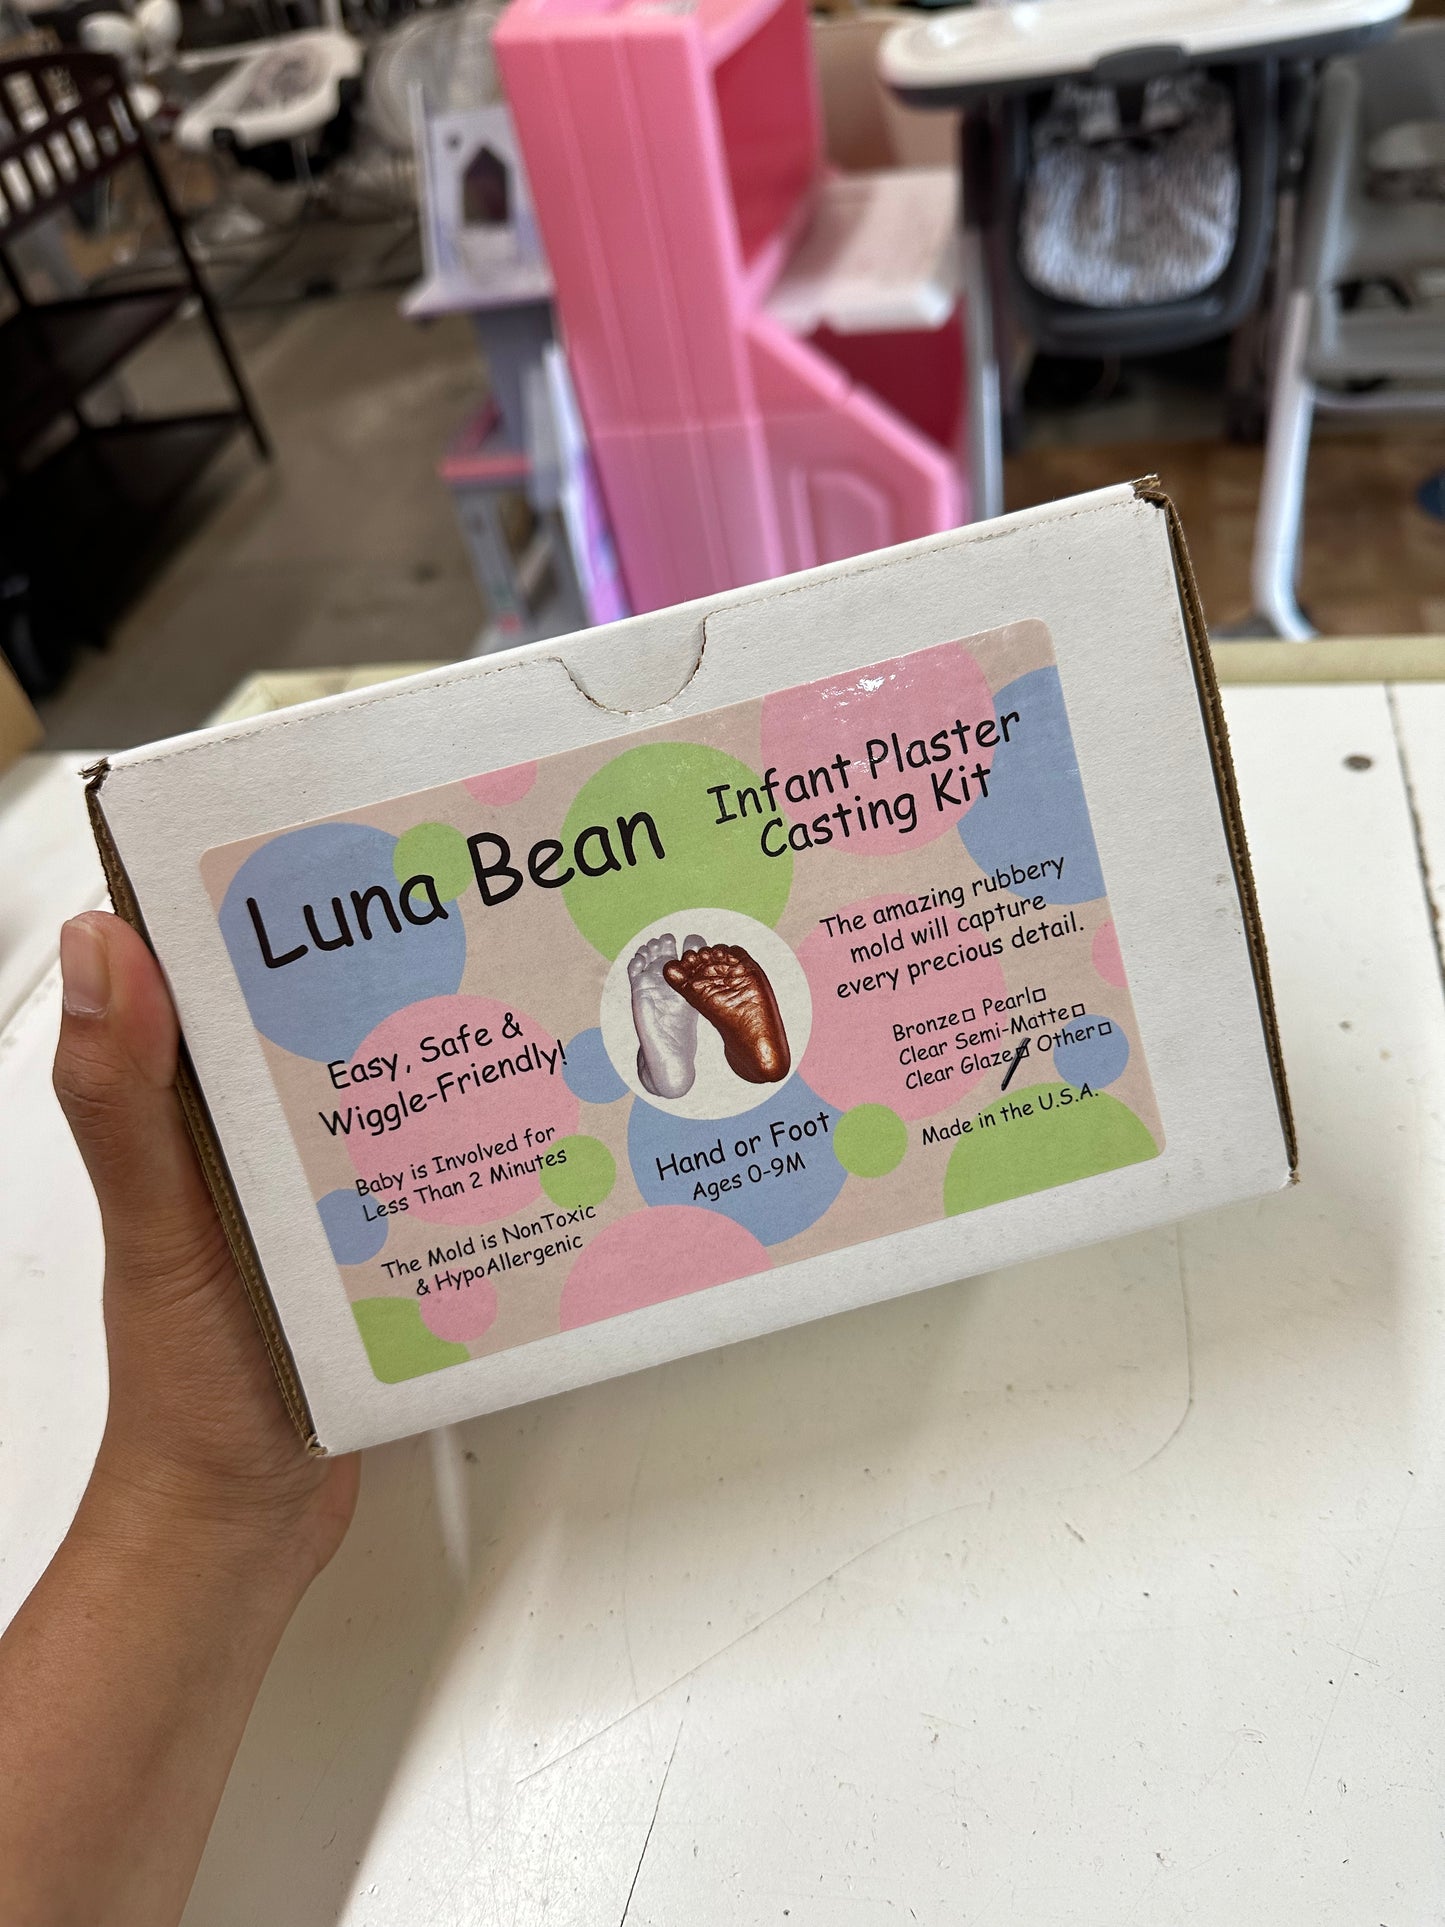 New Luna Bean Infant Plaster Casting Kit